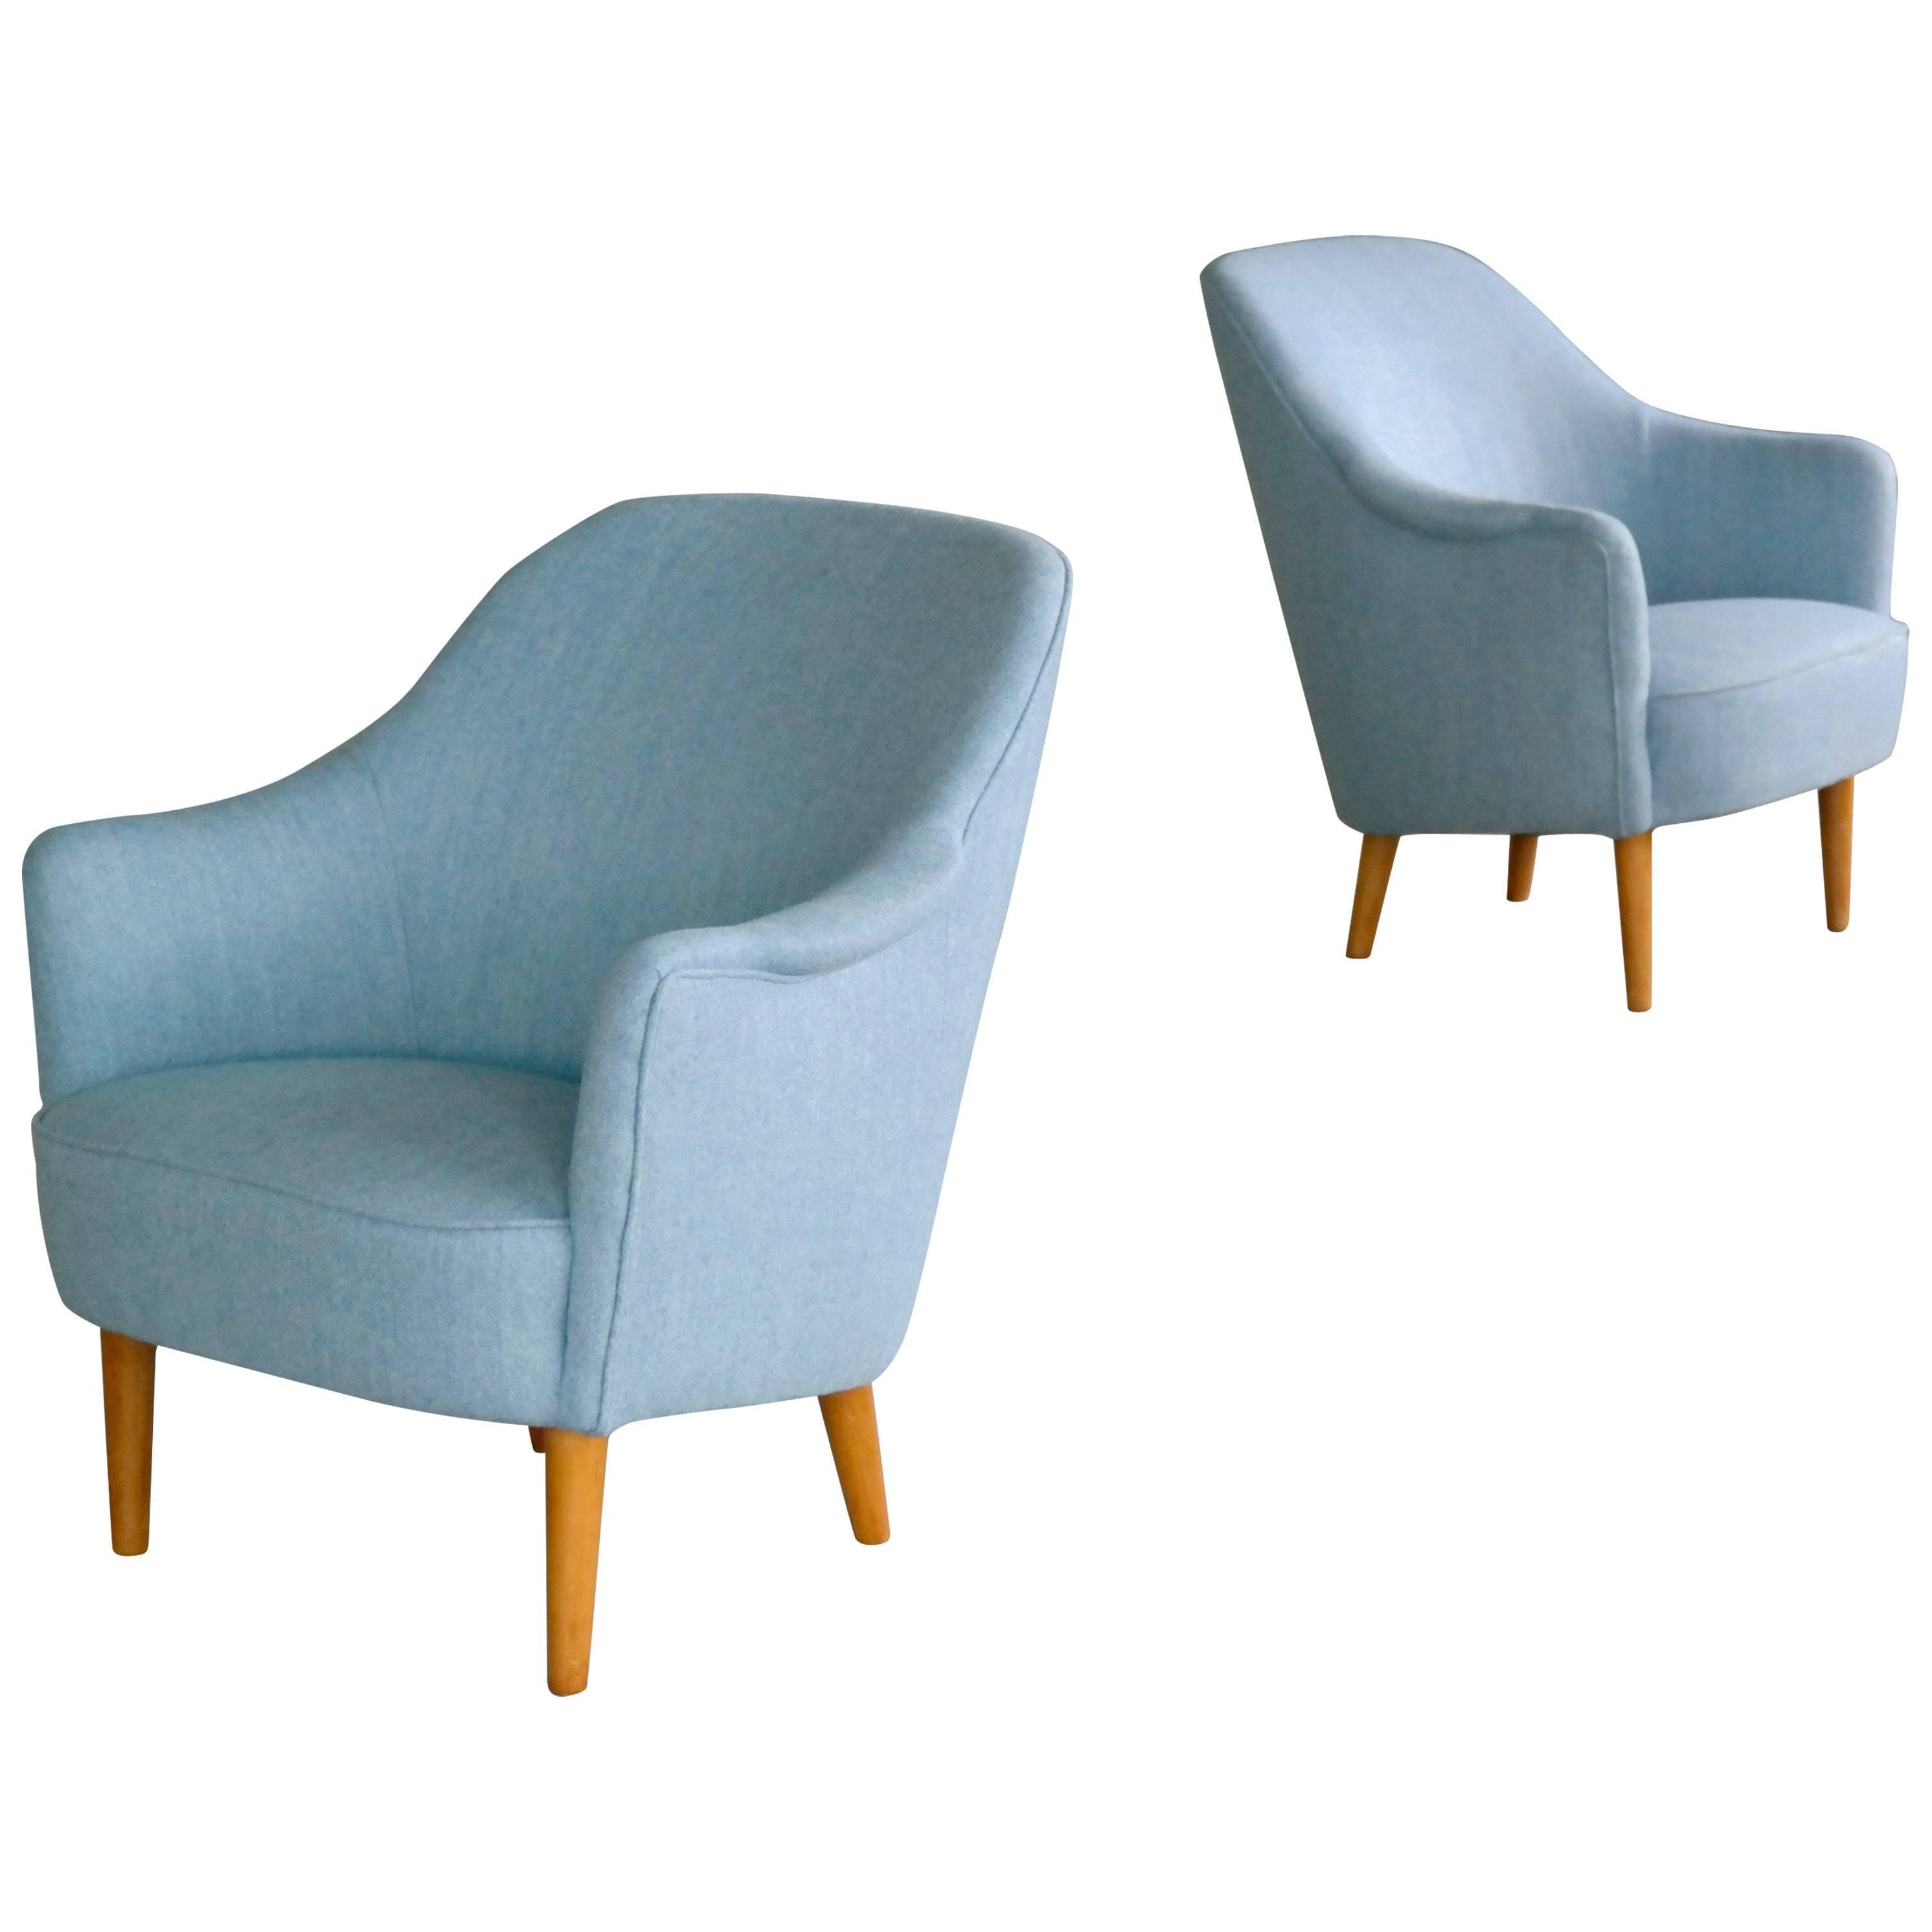 Pair of Carl Malmsten 1950s Lounge Chairs Model Samspel for O.H. Sjögren